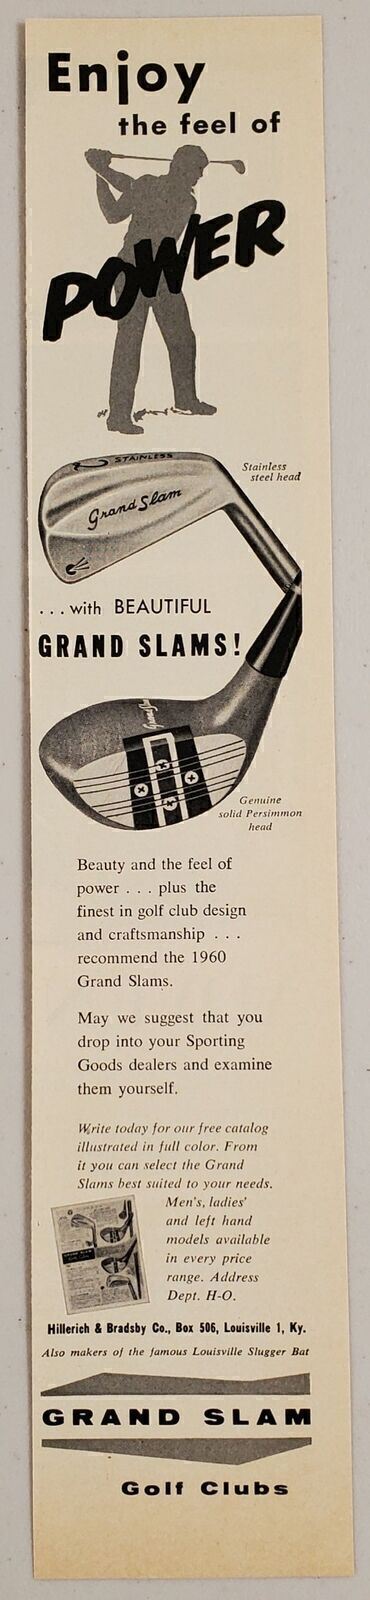 1960 Print Ad Grand Slam Golf Clubs Hillerich & Bradsby Louisville,Kentucky